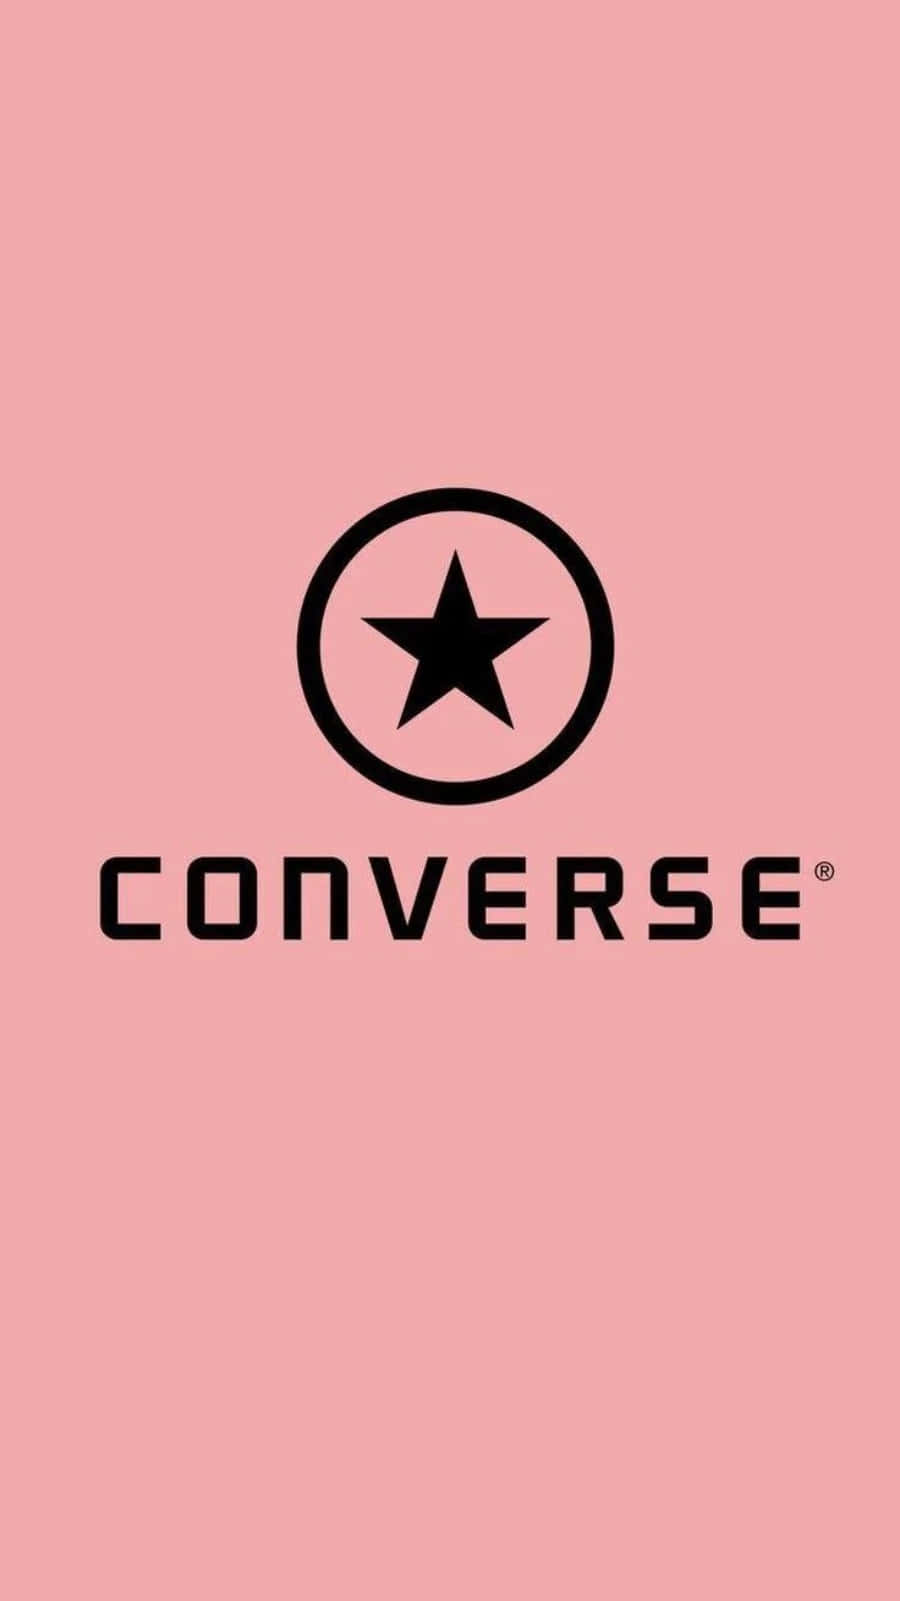 Klassiskdesign, Ikoniskt Logotyp: Varumärket Converse